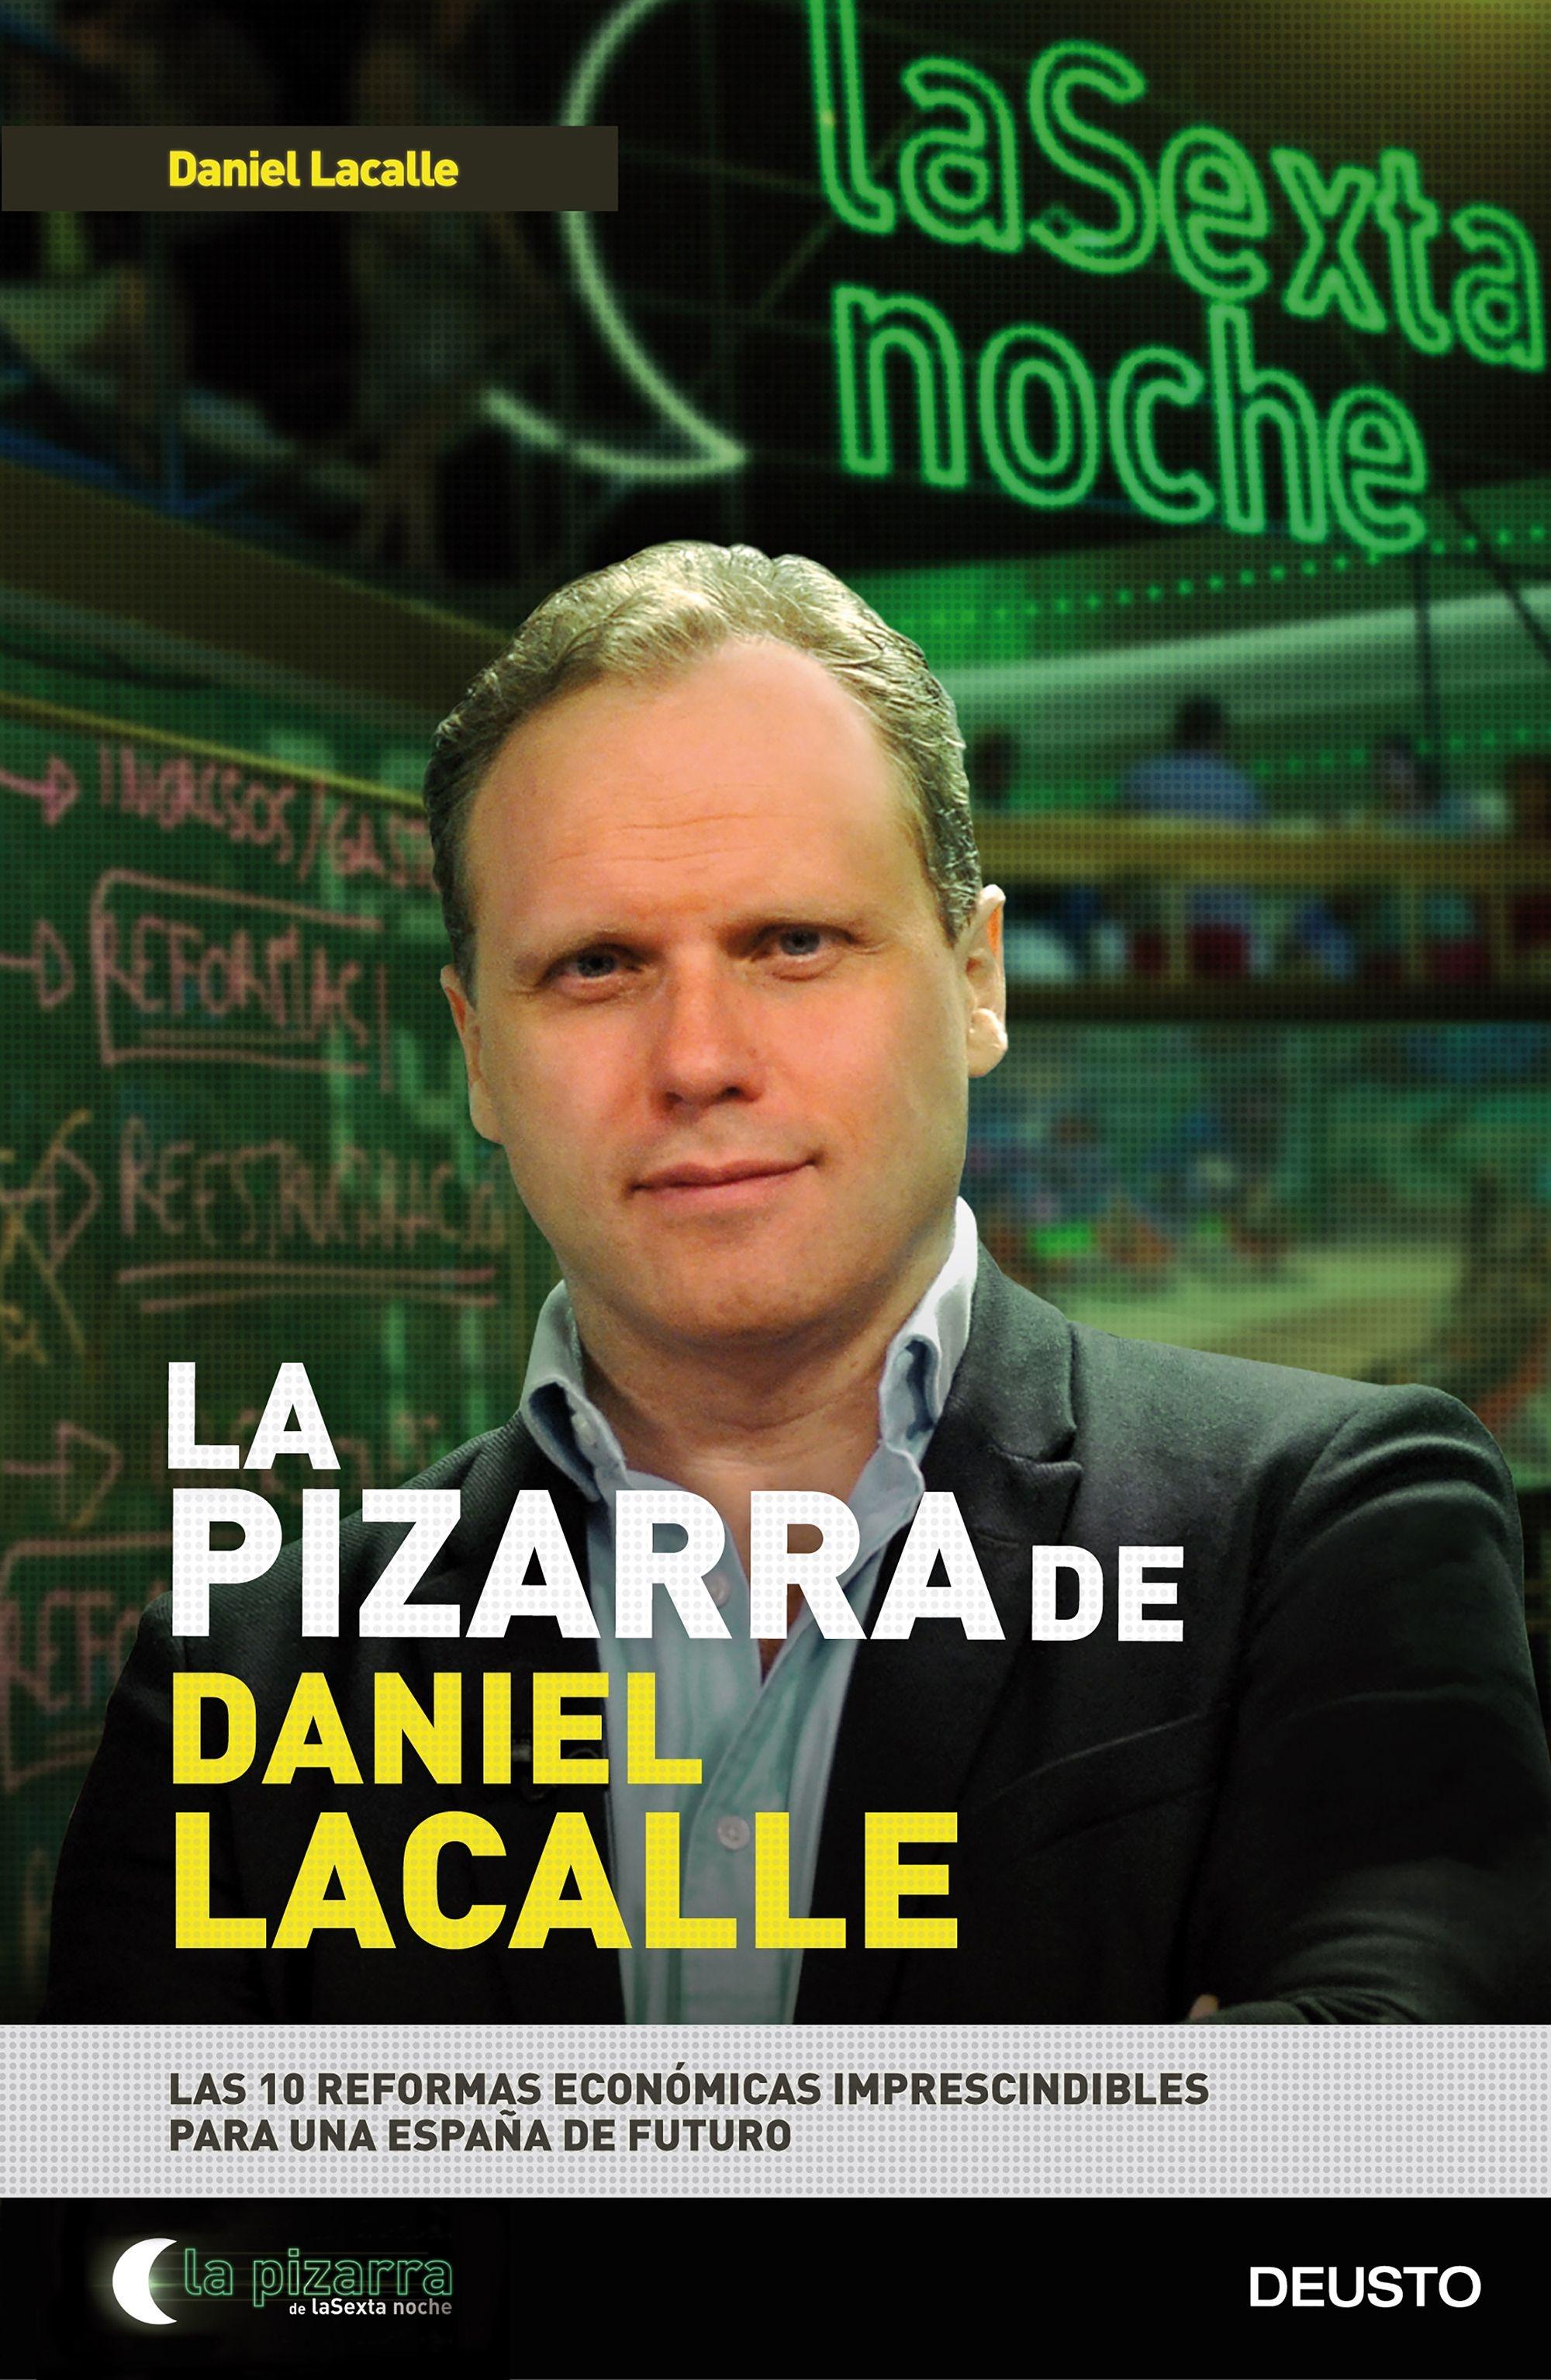 La Pizarra de Daniel Lacalle "Las 10 Reformas Económicas Imprescindibles para una España de Futuro"